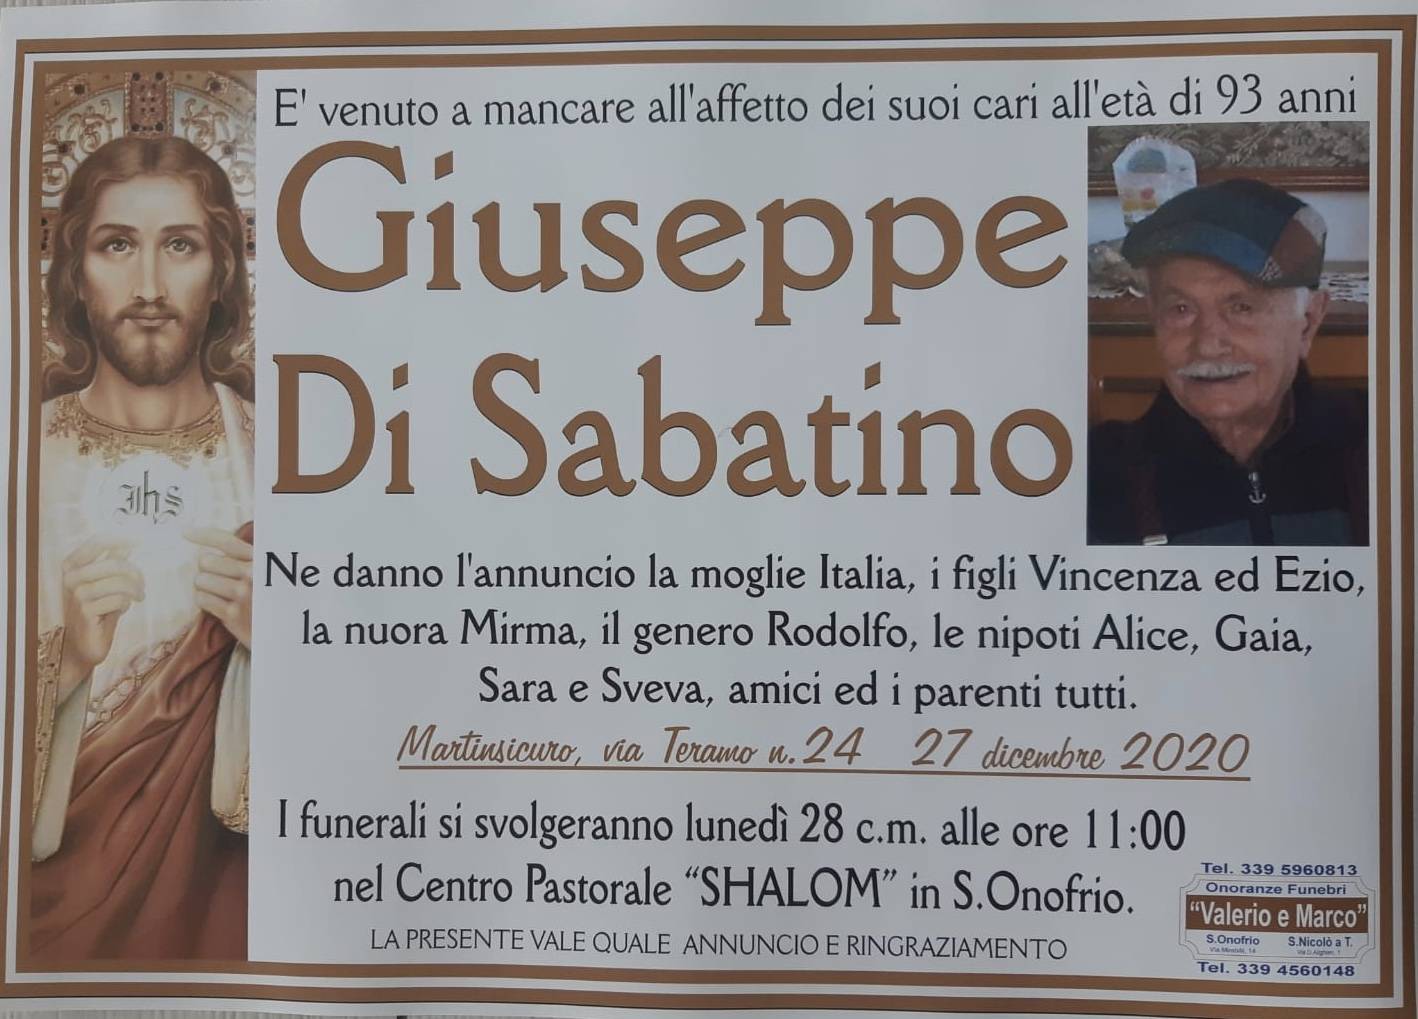 Giuseppe Di Sabatino